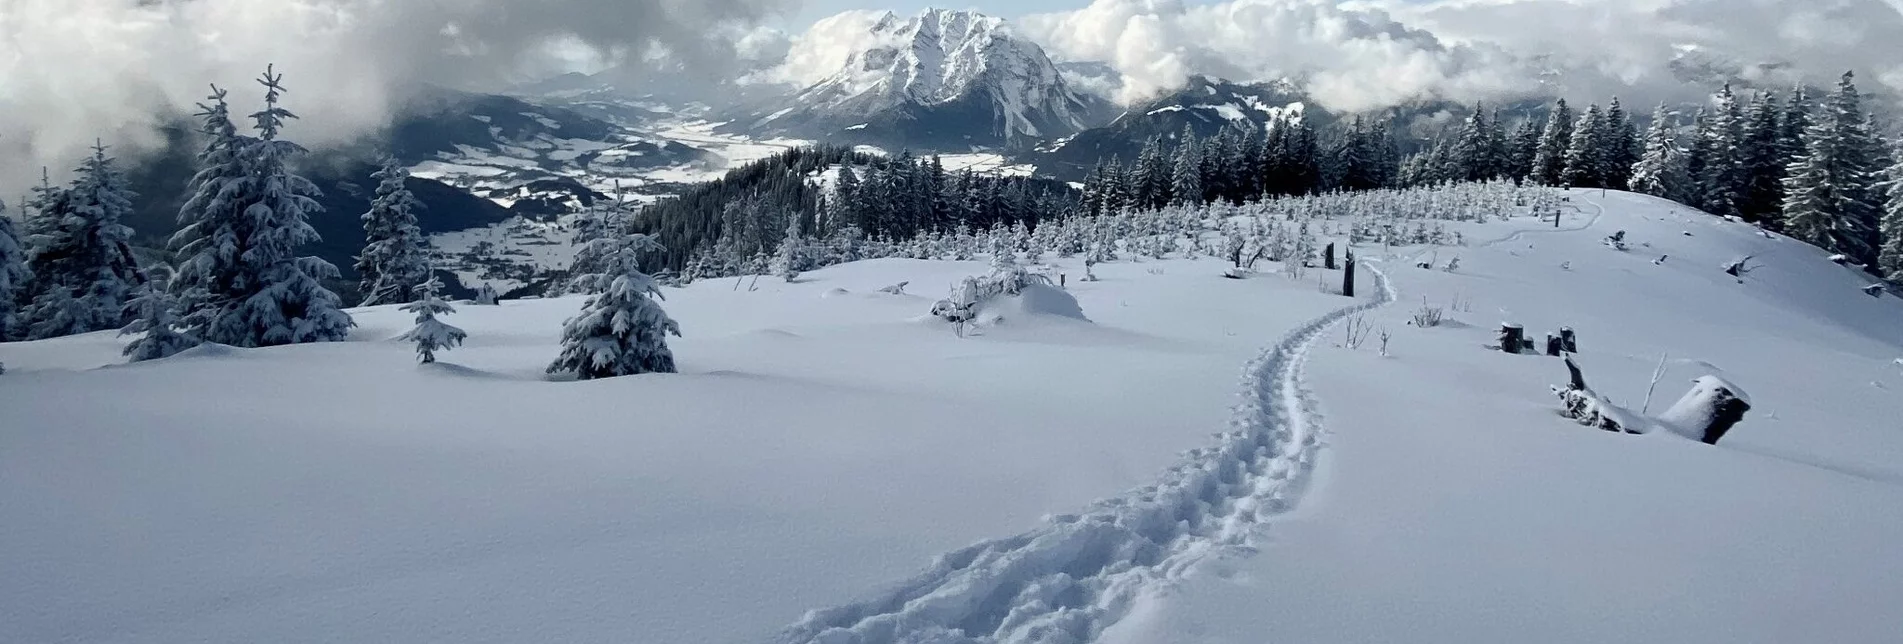 Snowshoe walking Snowshoe hiking tour Hohe Trett - Touren-Impression #1 | © Erlebnisregion Schladming-Dachstein